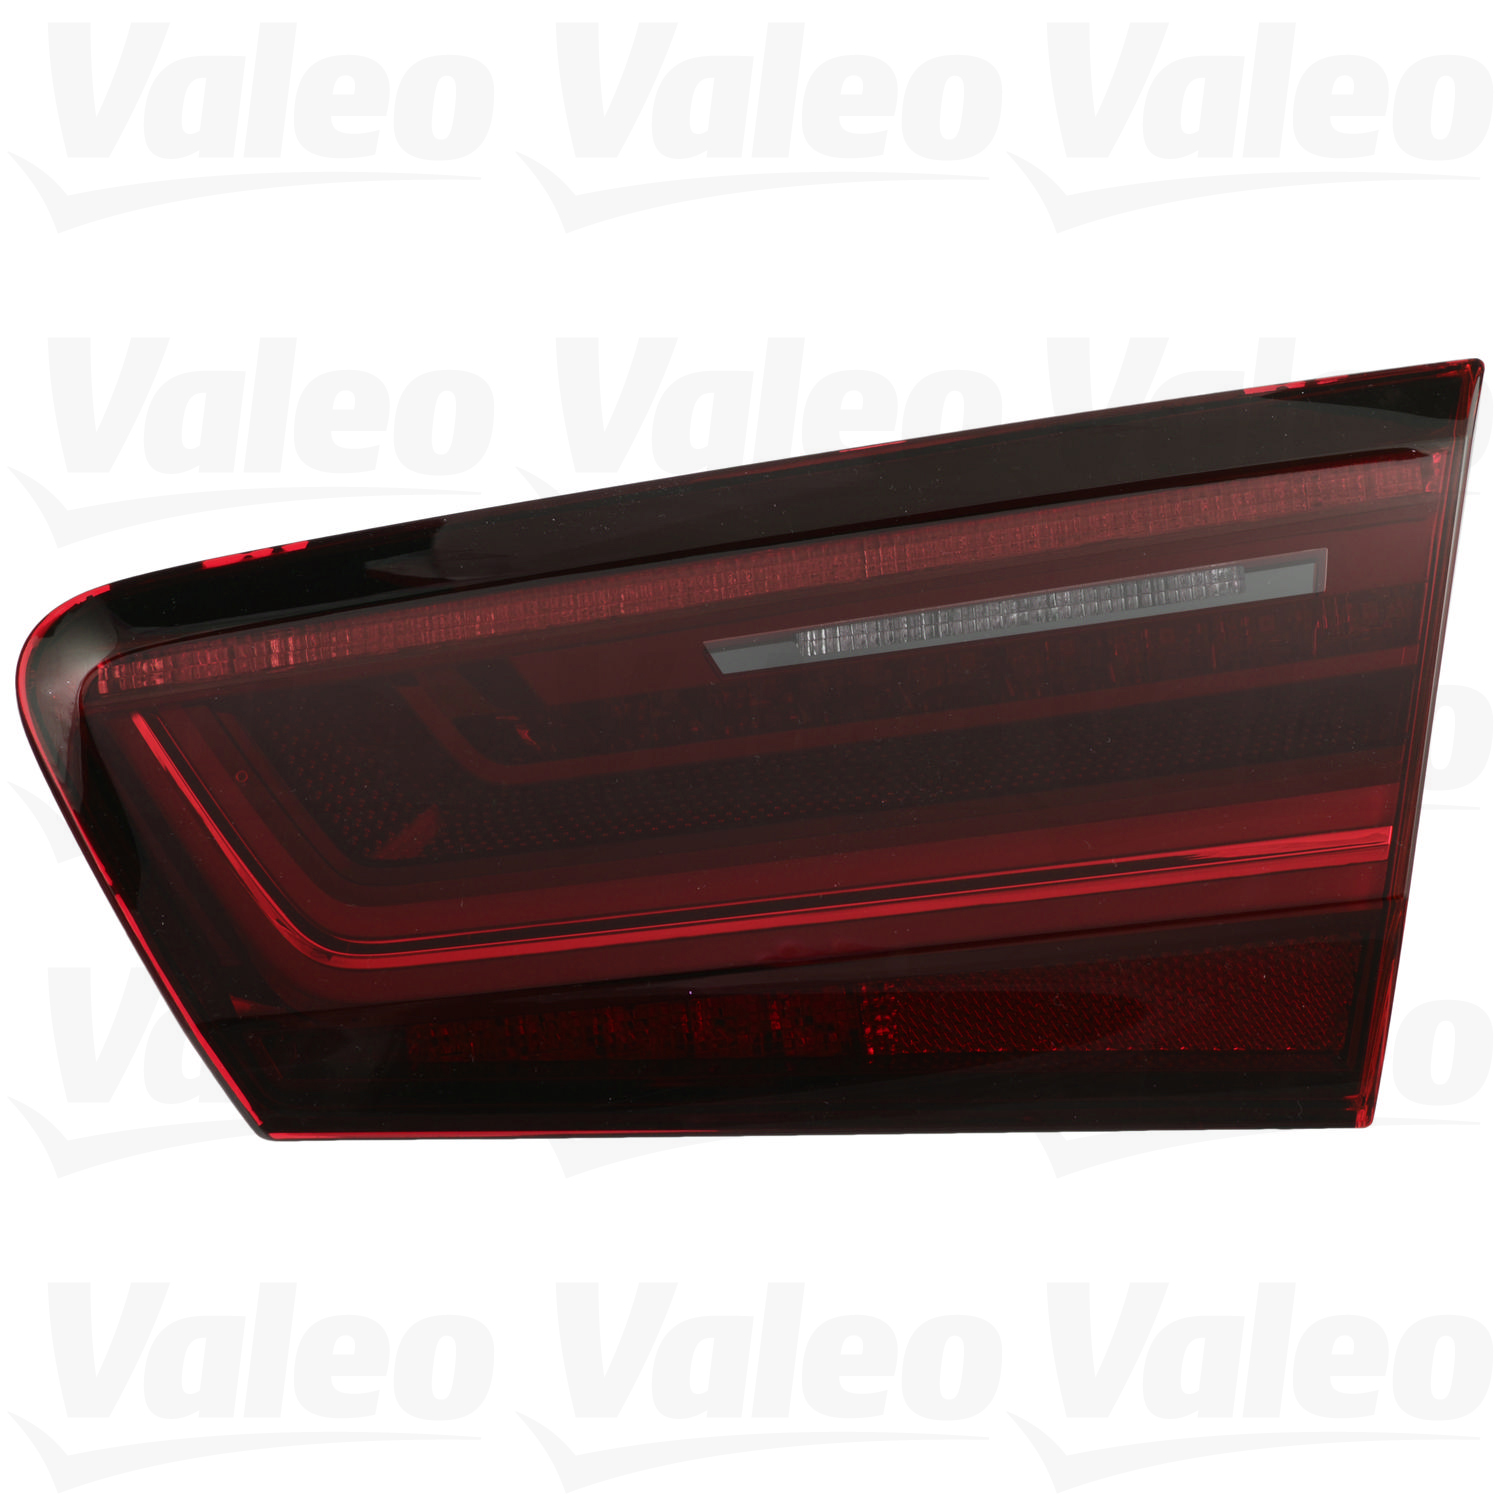 Audi Tail Light Assembly - Passenger Side Inner (LED) 4G5945094D - Valeo 47017